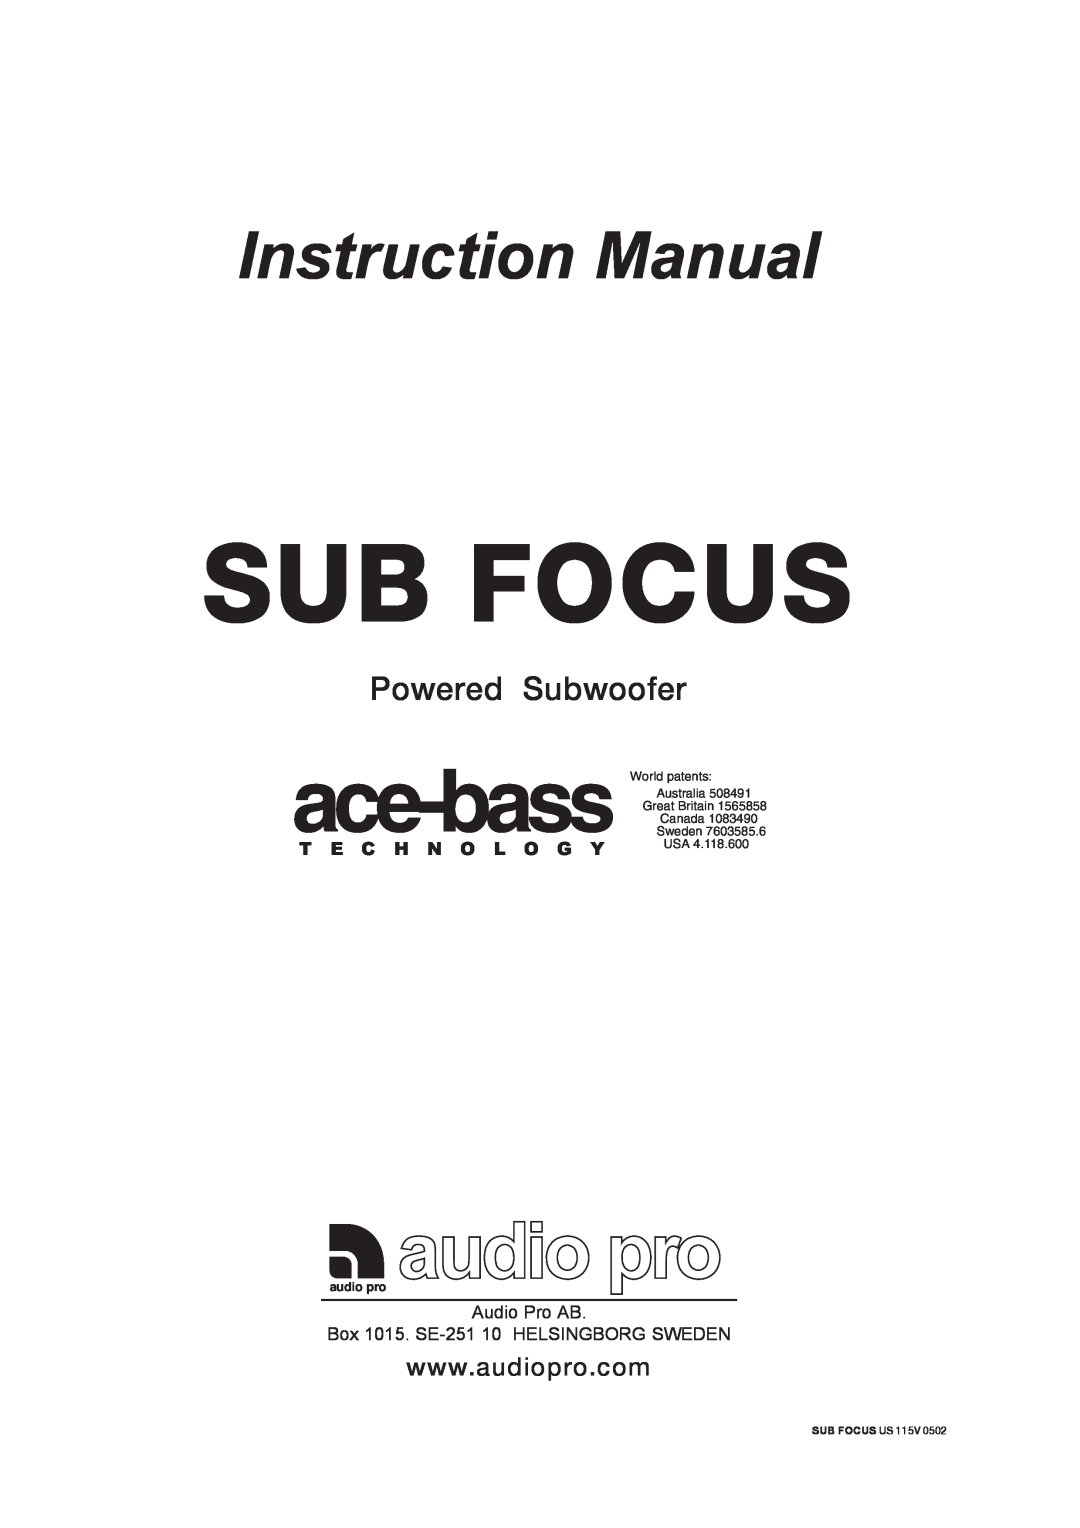 Audio Pro 115V 0502 instruction manual ace-bass, Powered Subwoofer, audio pro, Sub Focus Us 